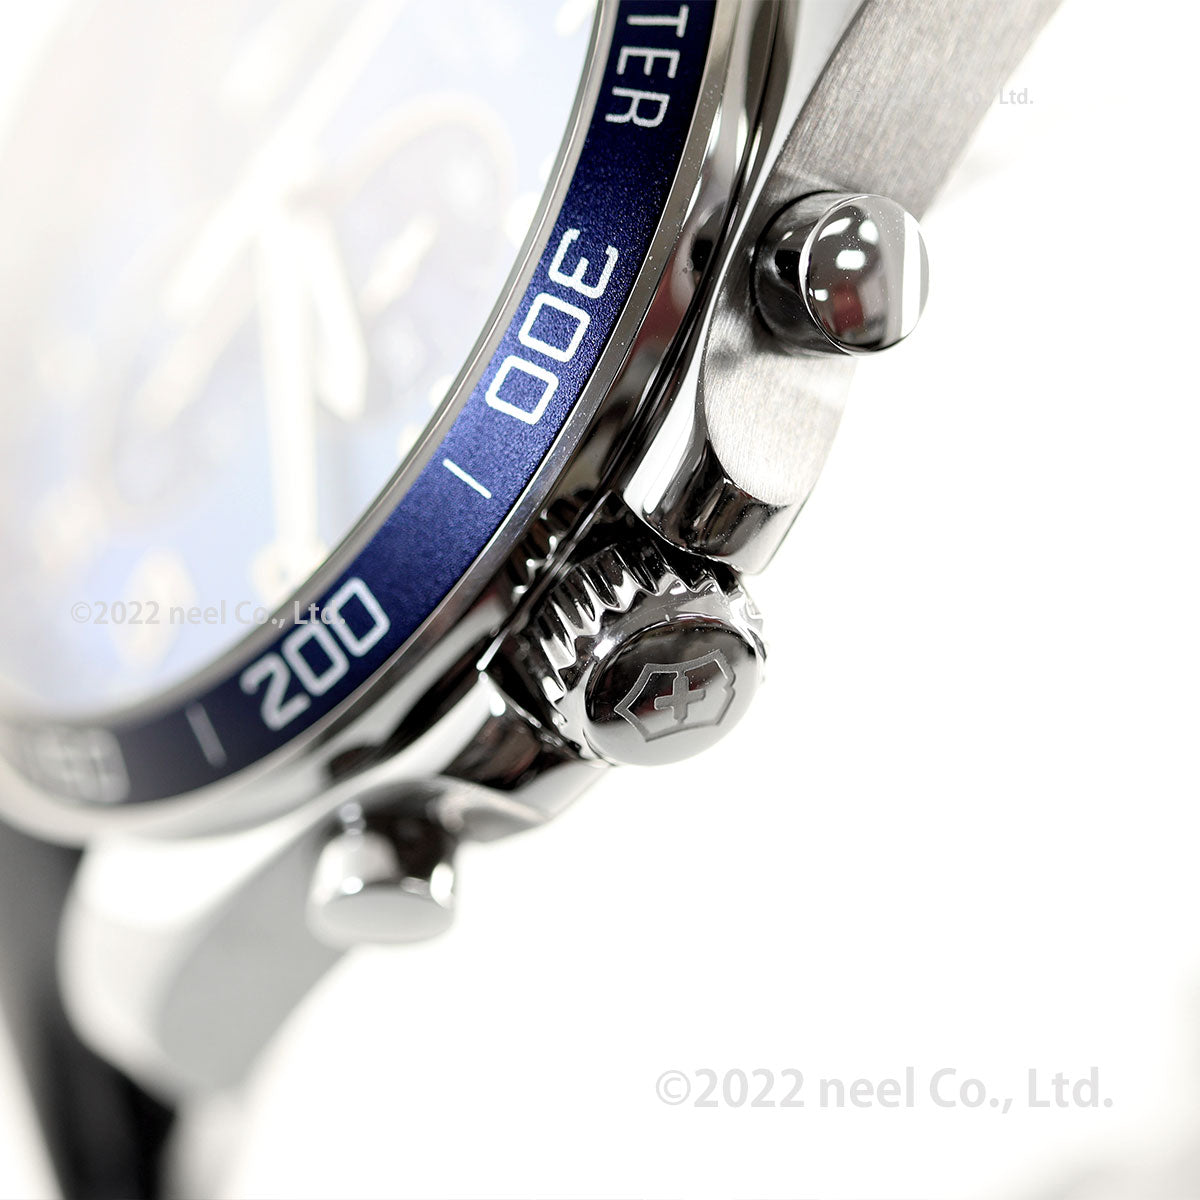 ビクトリノックス 時計 メンズ VICTORINOX 腕時計 241929 フィールドフォース クラシッククロ FieldForce Classic Chrono ブルー